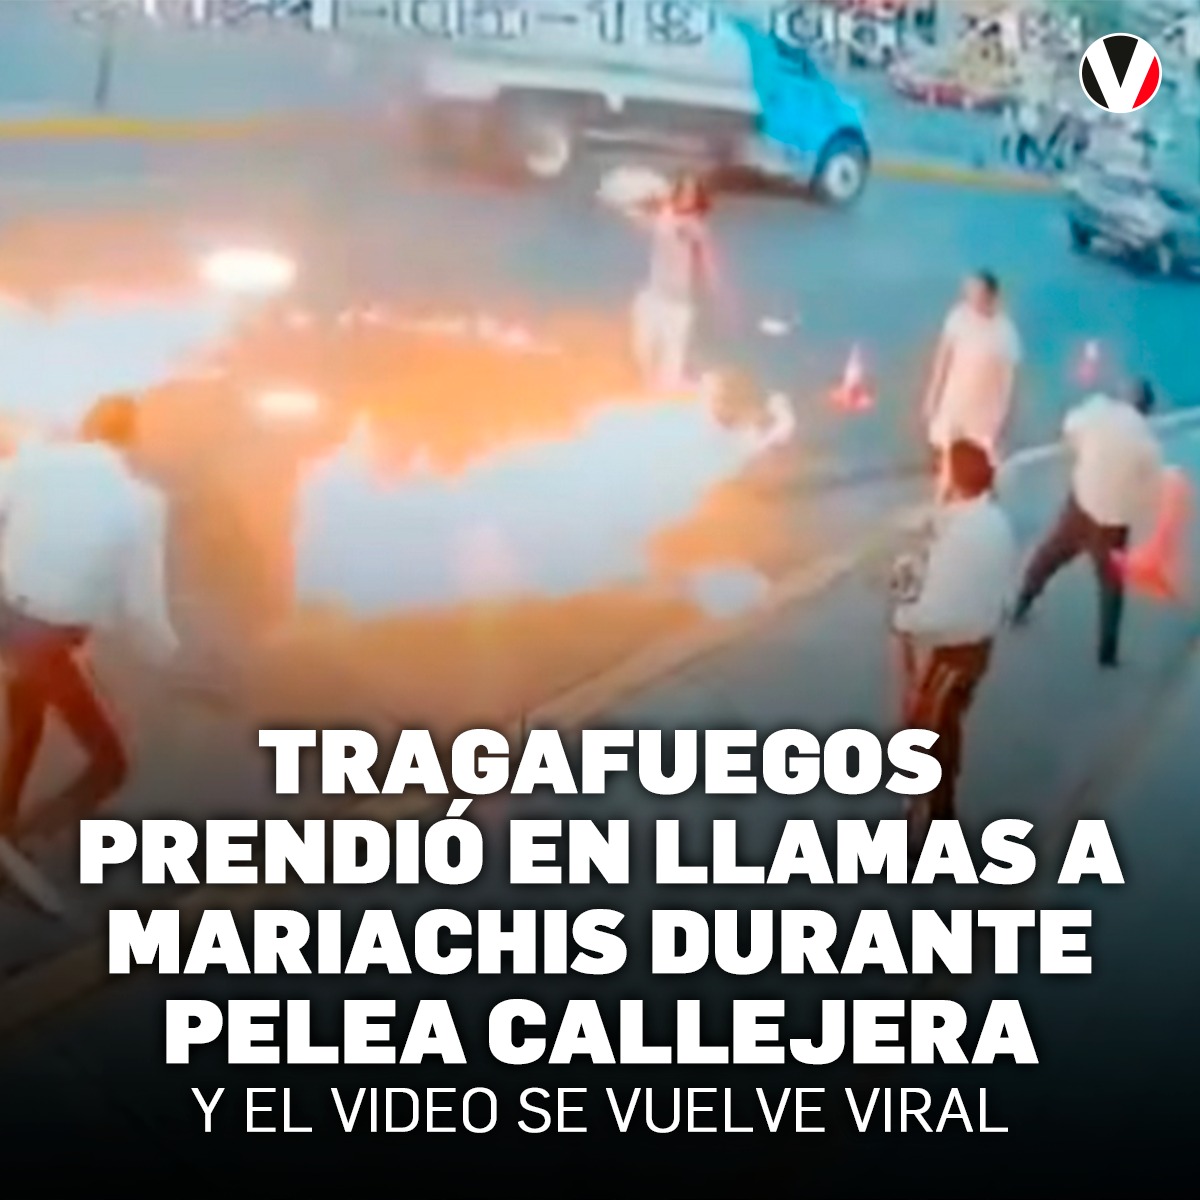 #VIDEO | En México, una banda de mariachis se vio envuelta en una confrontación callejera con un artista escupefuego, que concluyó con una desesperada huida de los músicos mientras sus icónicas chaquetas ardían ▶️ v.vistazo.com/3wDsmts